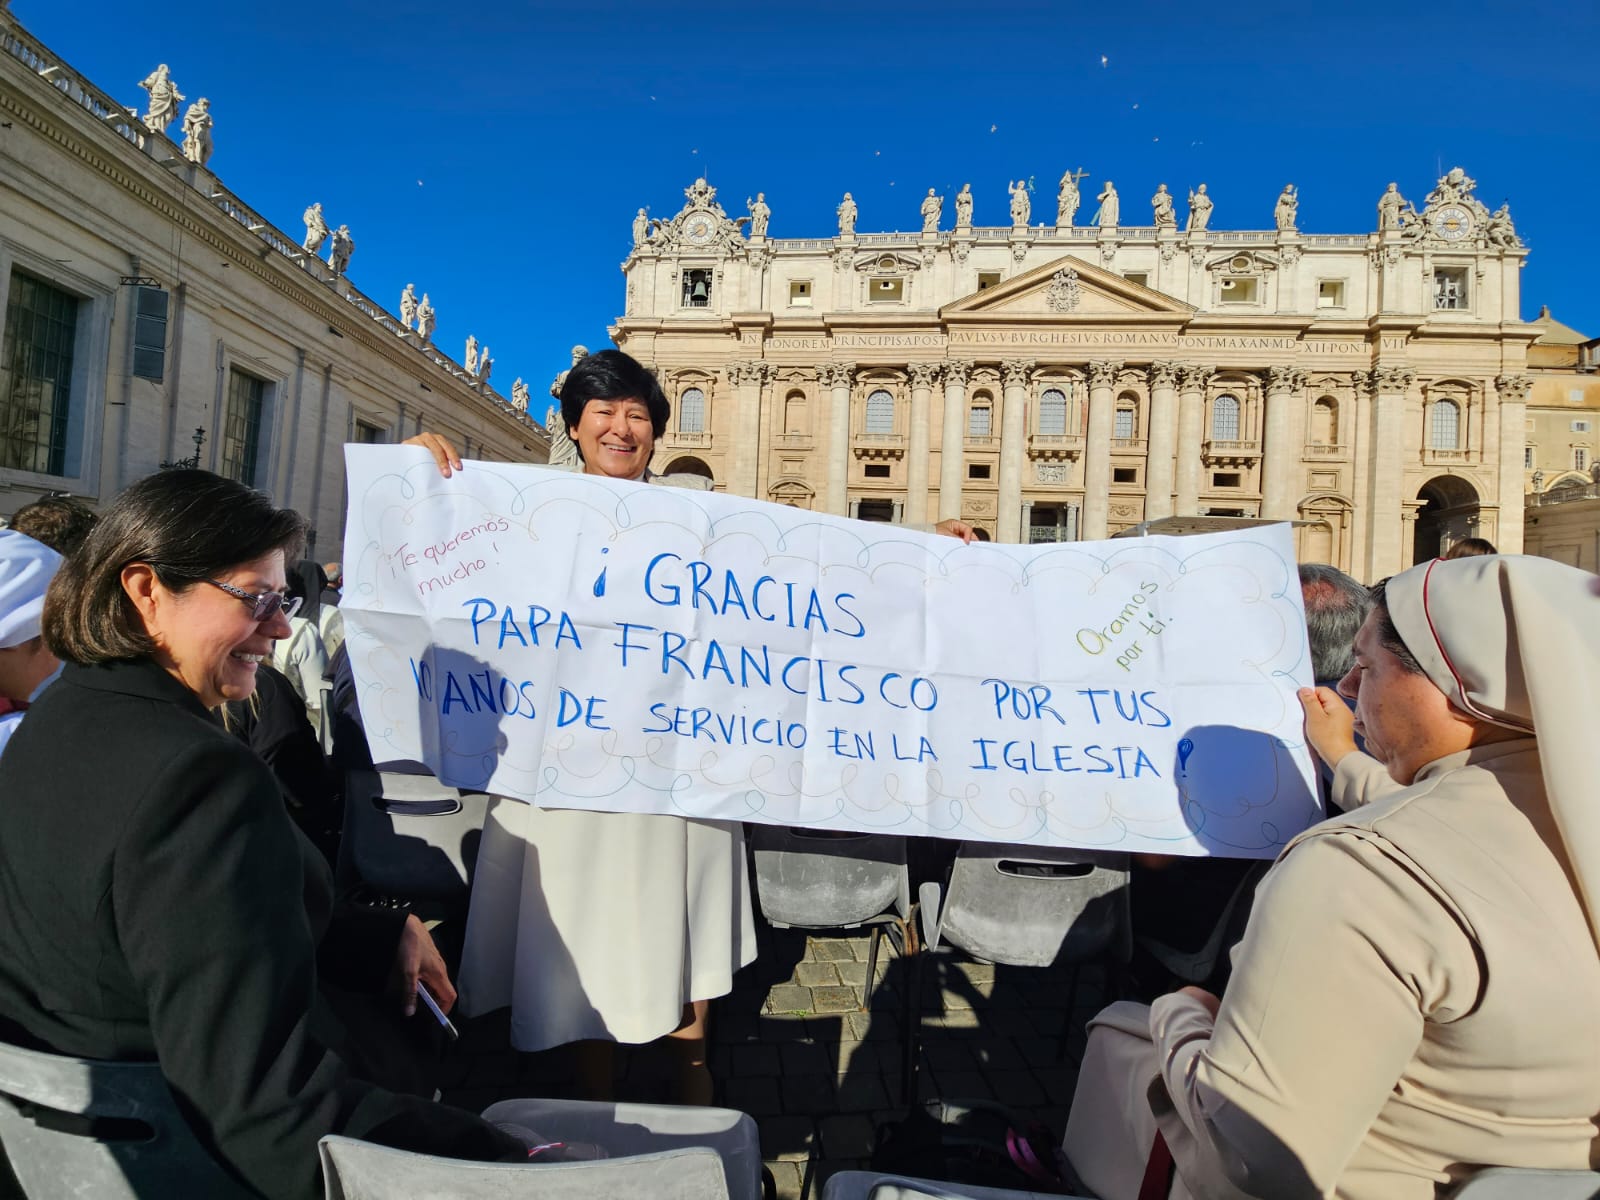 La Hna. María Elena Méndez Ochoa sostiene una pancarta con una salutación al papa Francisco. 